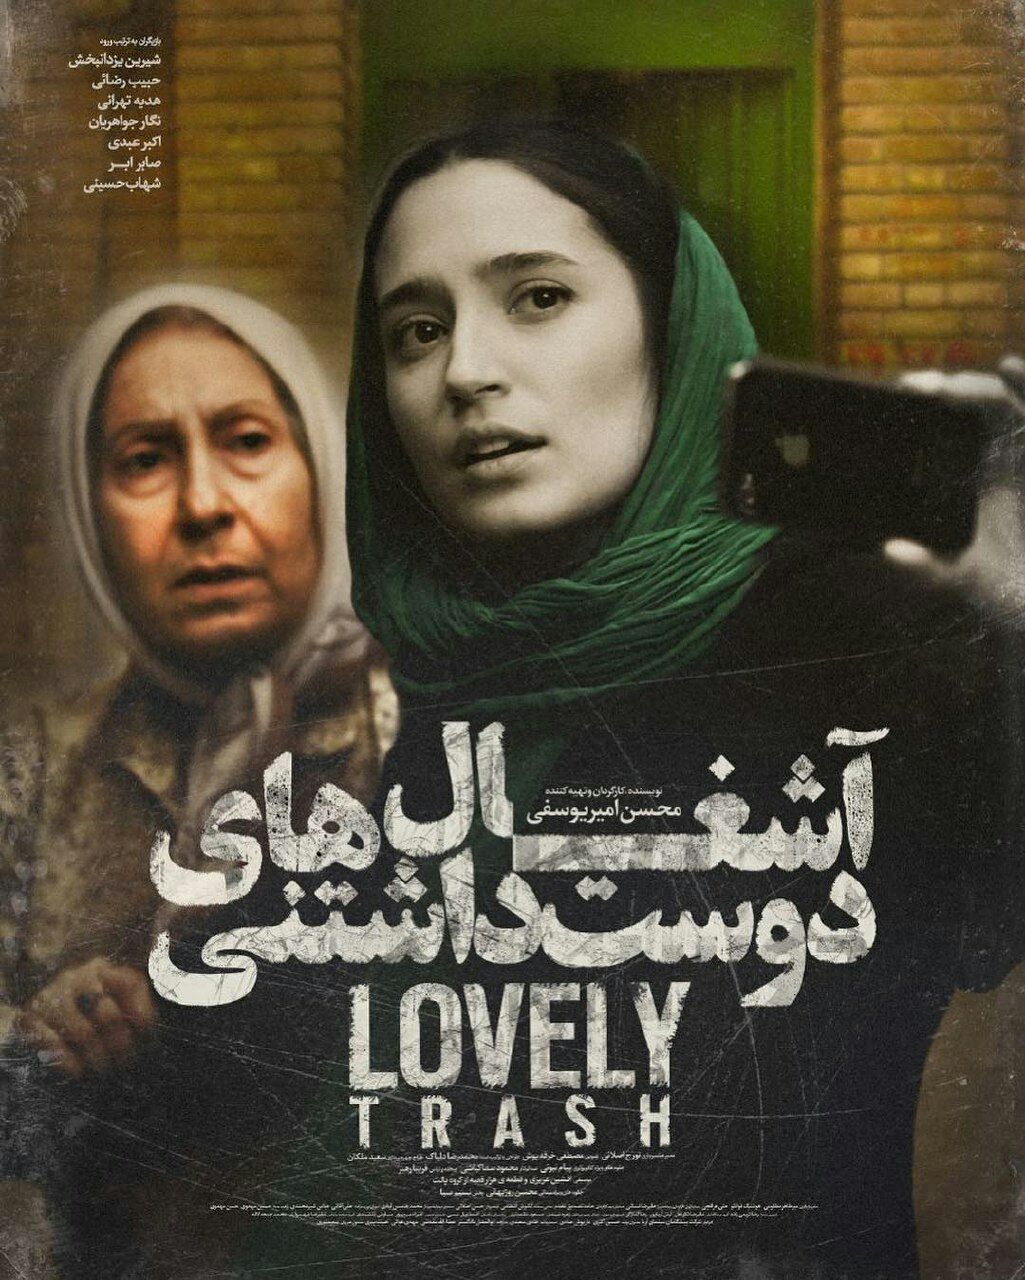 پوستر فیلم سینمایی آشغال های دوست داشتنی به کارگردانی محسن امیریوسفی